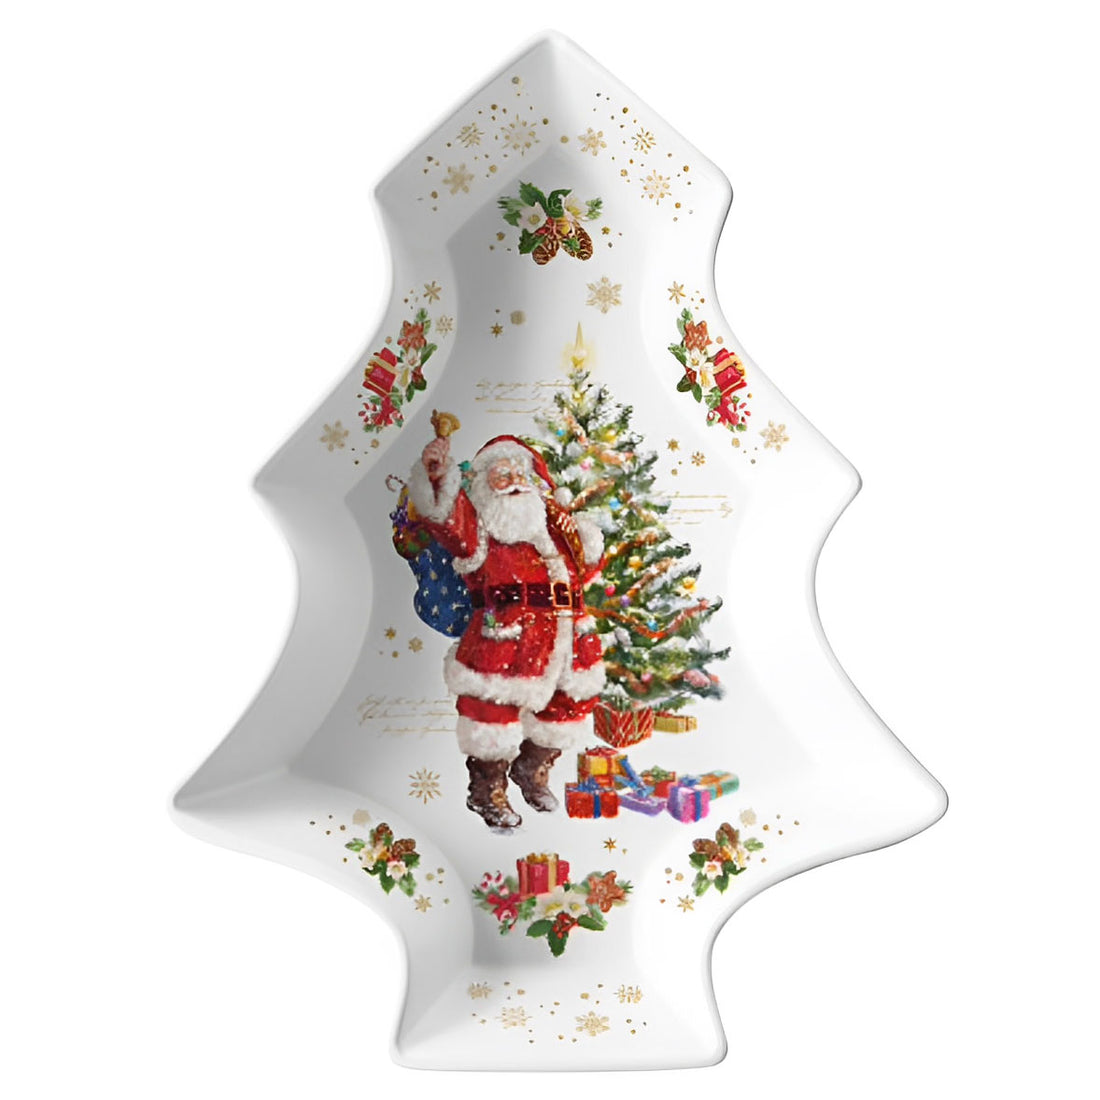 EASY LIFE Christmas Memories Piatto Forma Abete di Natale 28,5x21,5cm Porcellana Tavola di Natale